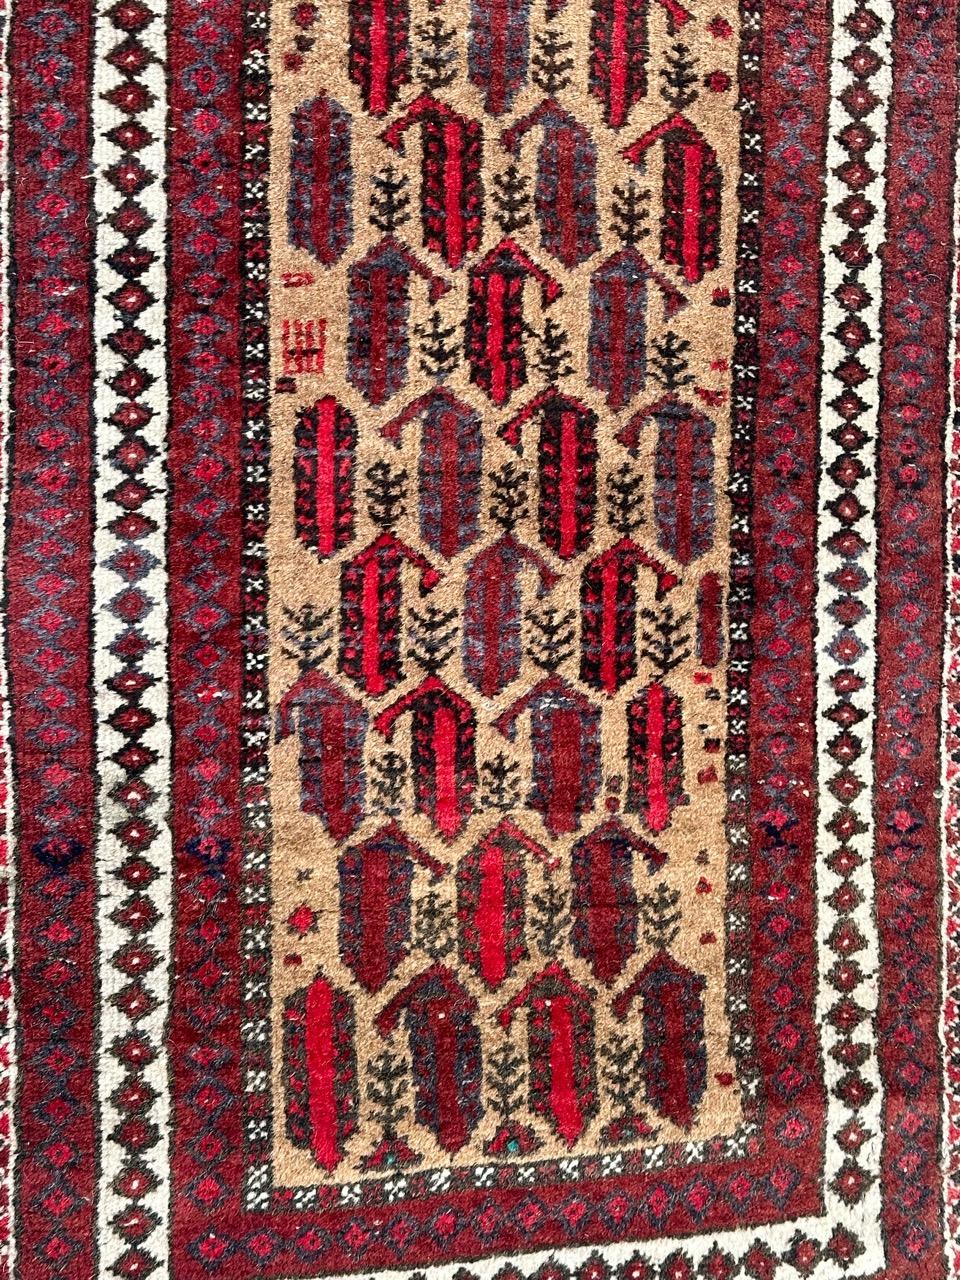 Joli tapis turkmène Baluch du milieu du siècle avec des motifs stylisés et de belles couleurs avec un champ jaune, rouge, marron, violet, blanc et noir, entièrement noué à la main avec de la laine sur une base de coton.

✨✨✨
